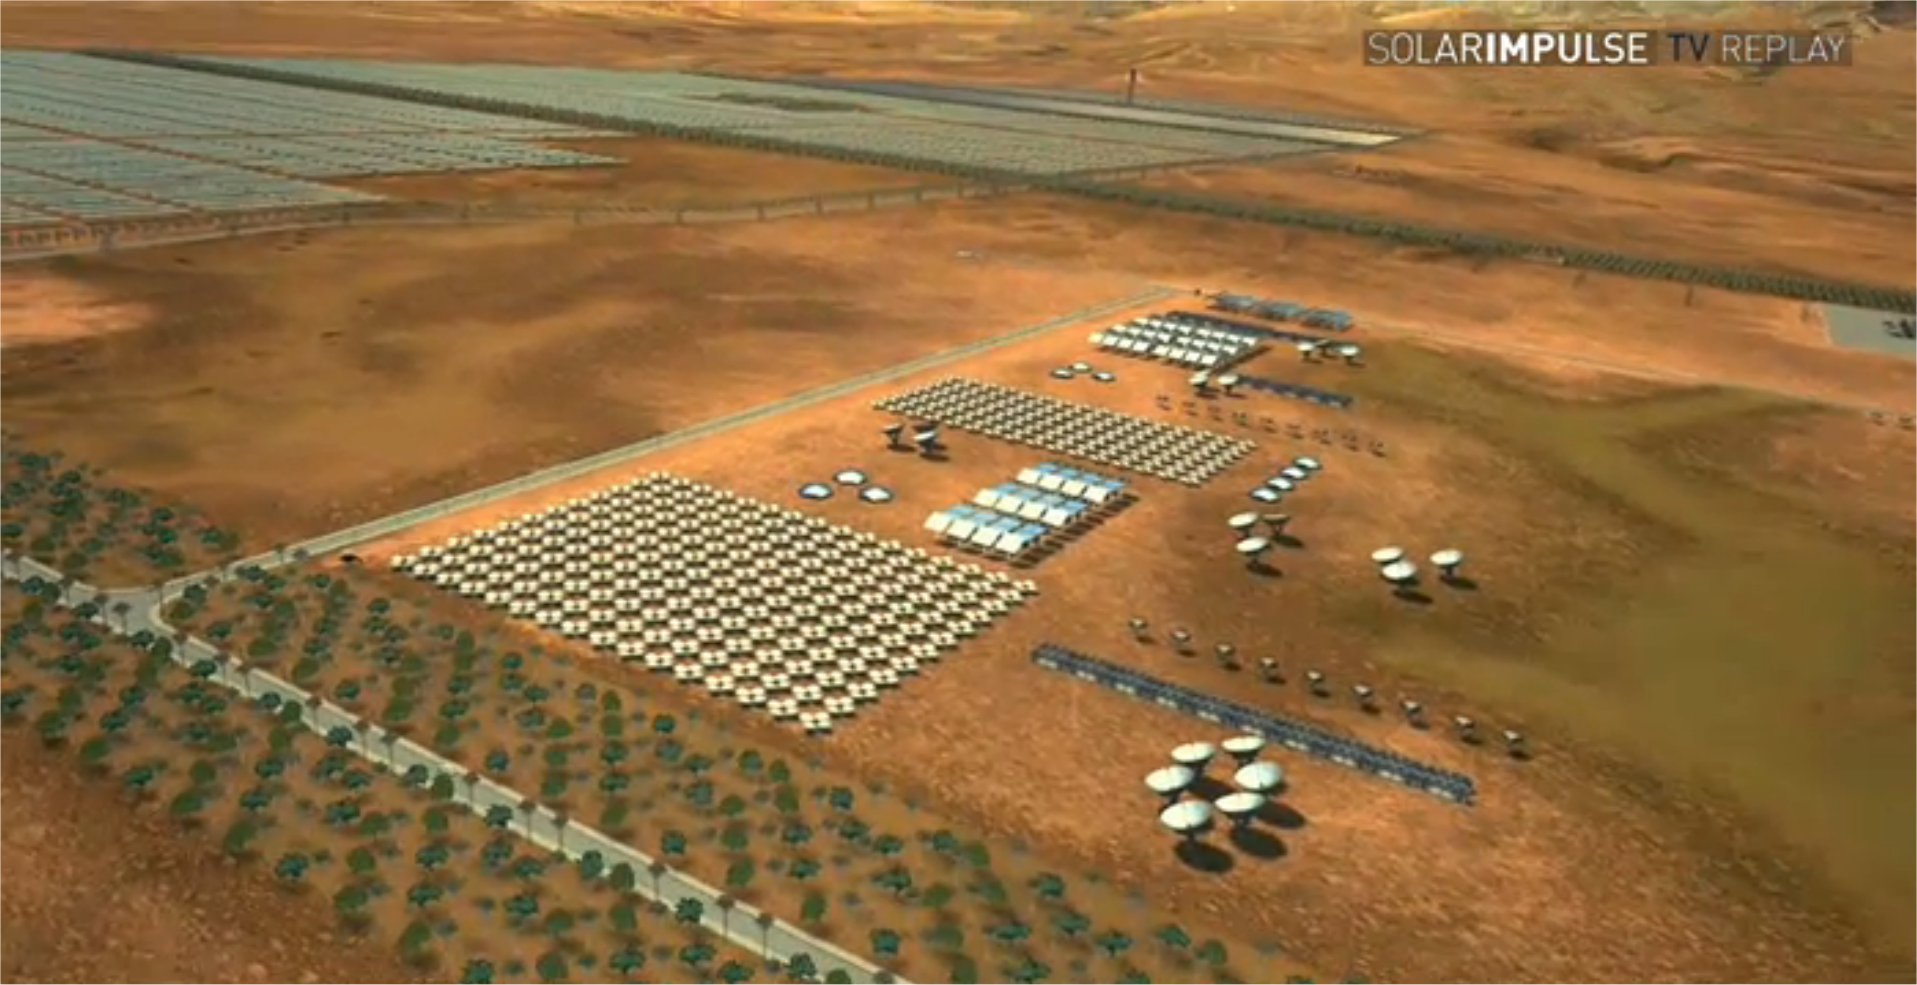 La centrale thermosolaire du projet Masen (ici une vue d'artiste), près de Ouarzazate, s'étalera sur 30 km2 et produira 100 à 125 MW dans un premier temps puis, à terme, 500 MW.&nbsp;© Solar Impulse